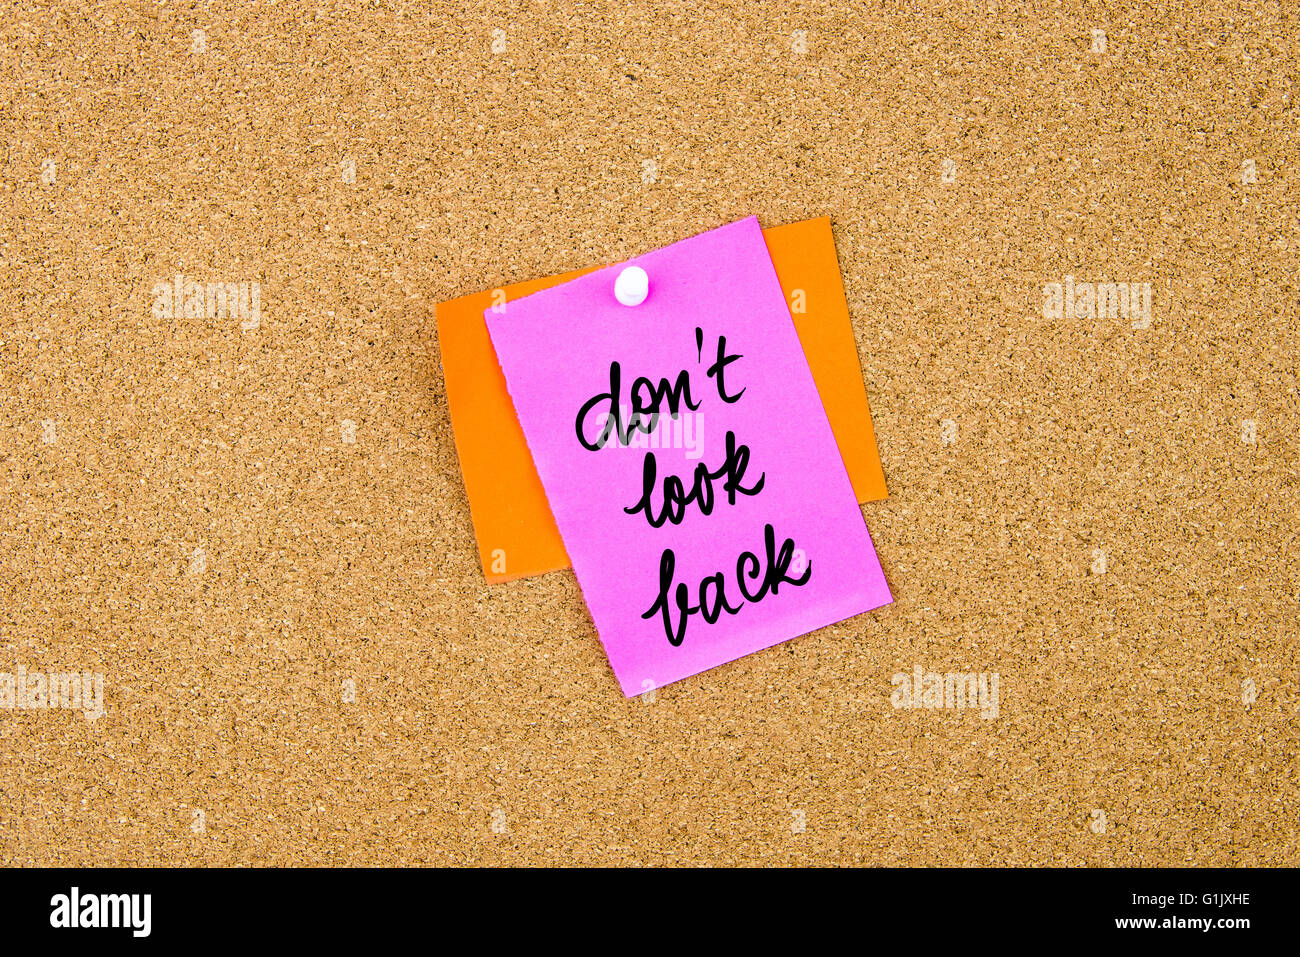 Tun nicht Look Back geschrieben auf Papier-Schuldbrief auf Pinnwand mit weißen Reißzwecke, Kopie Speicherplatz merken Stockfoto